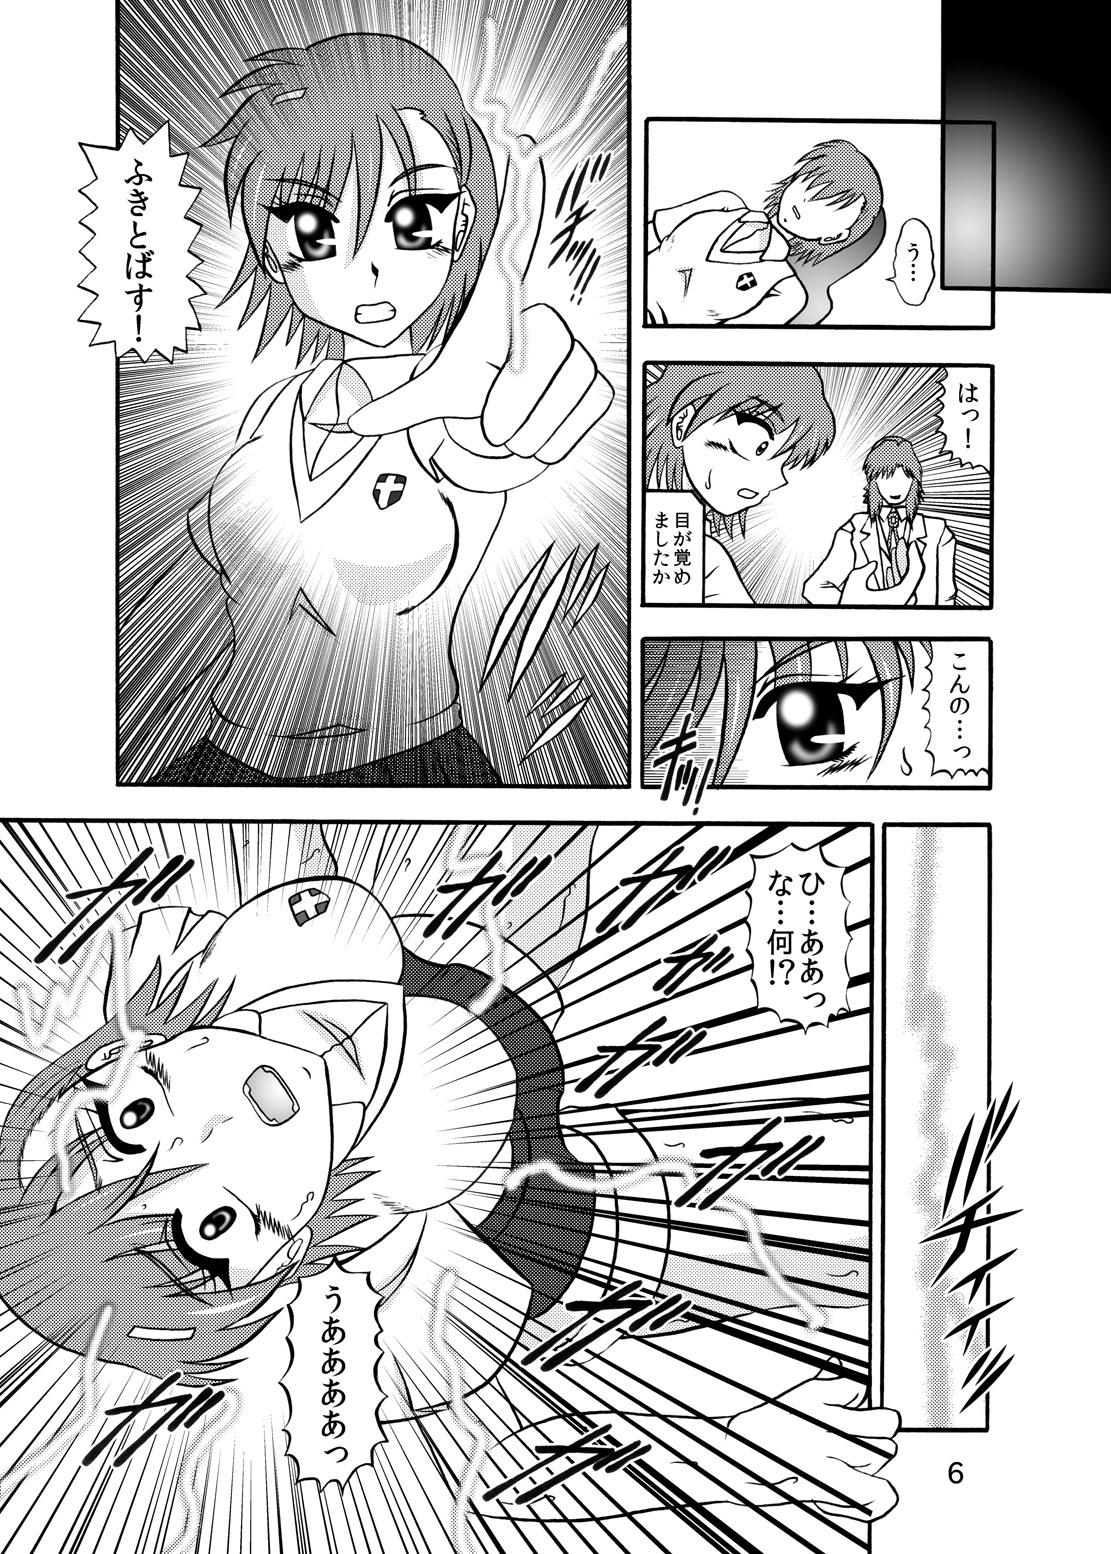 Dom Inyoku Kaizou: Misaka Mikoto - Toaru kagaku no railgun Nerd - Page 4